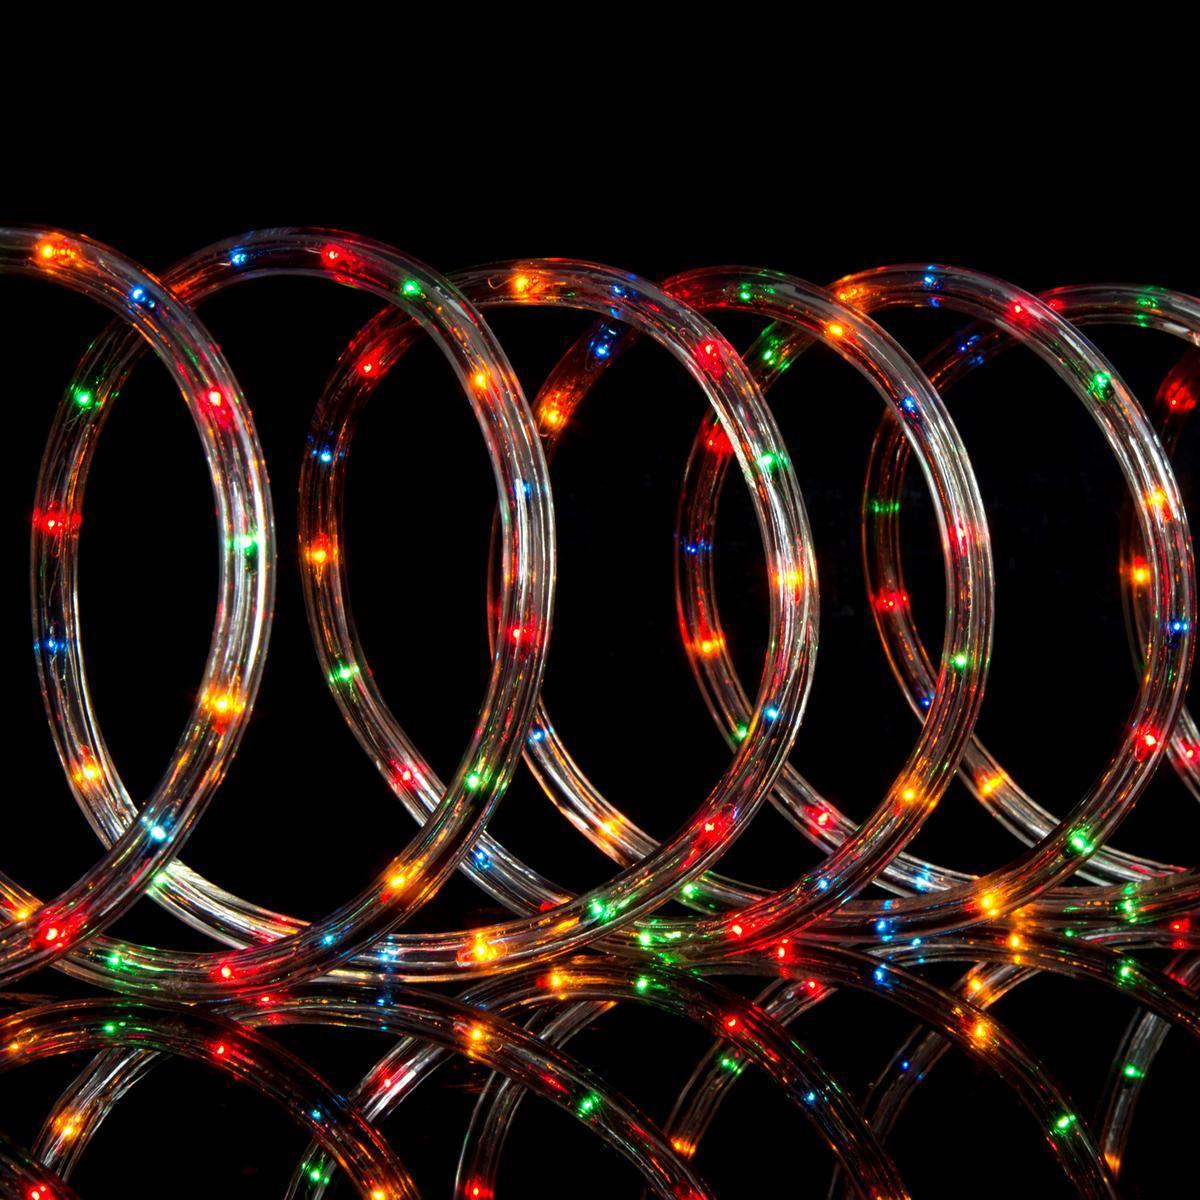 Guirlande électrique tube fixe - Longueur 9 mètres - Multicolore